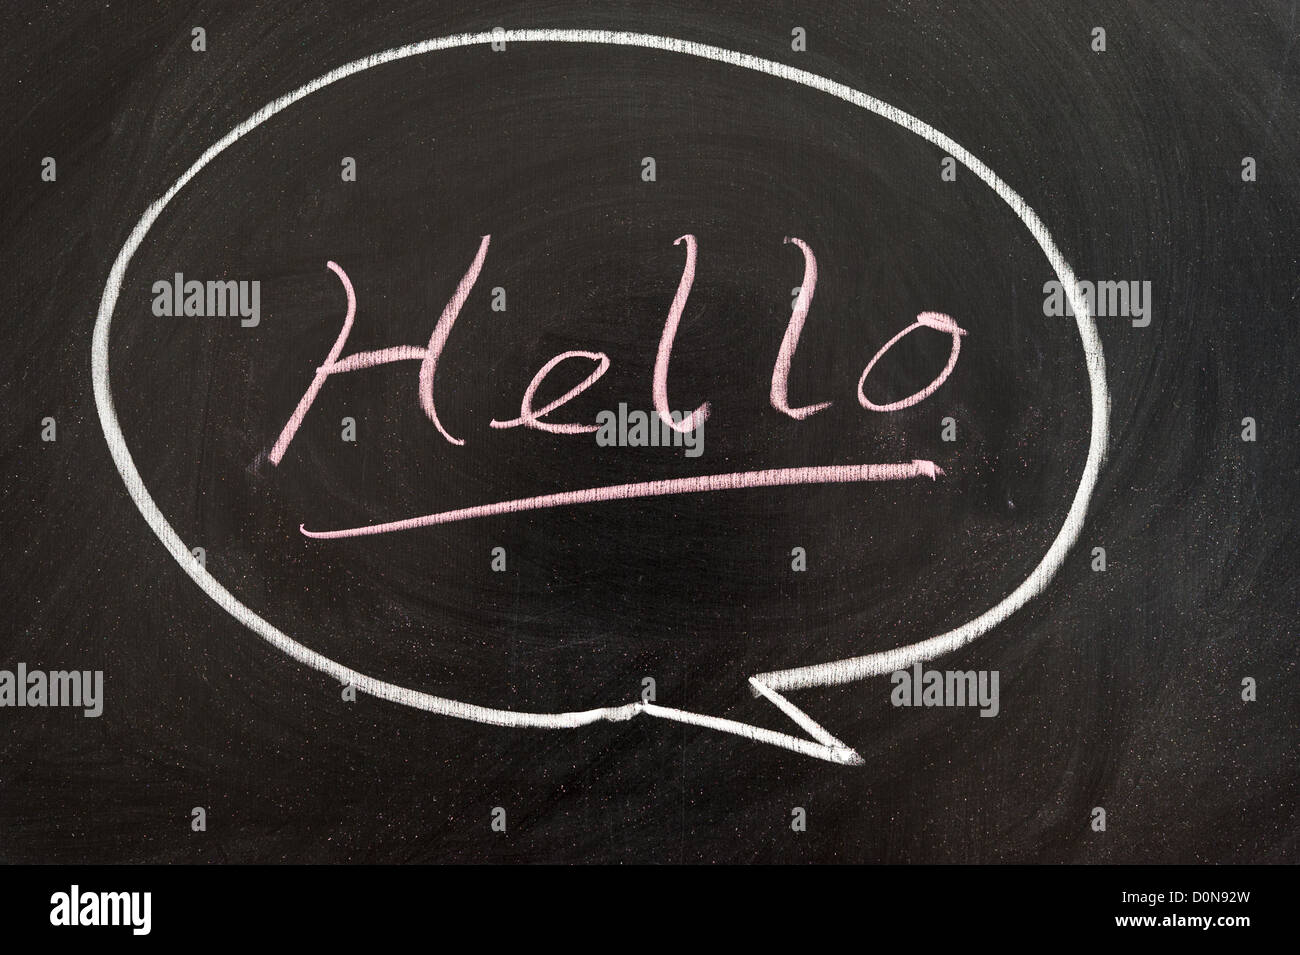 Hello word written in a bubble on chalkboard Stock Photo